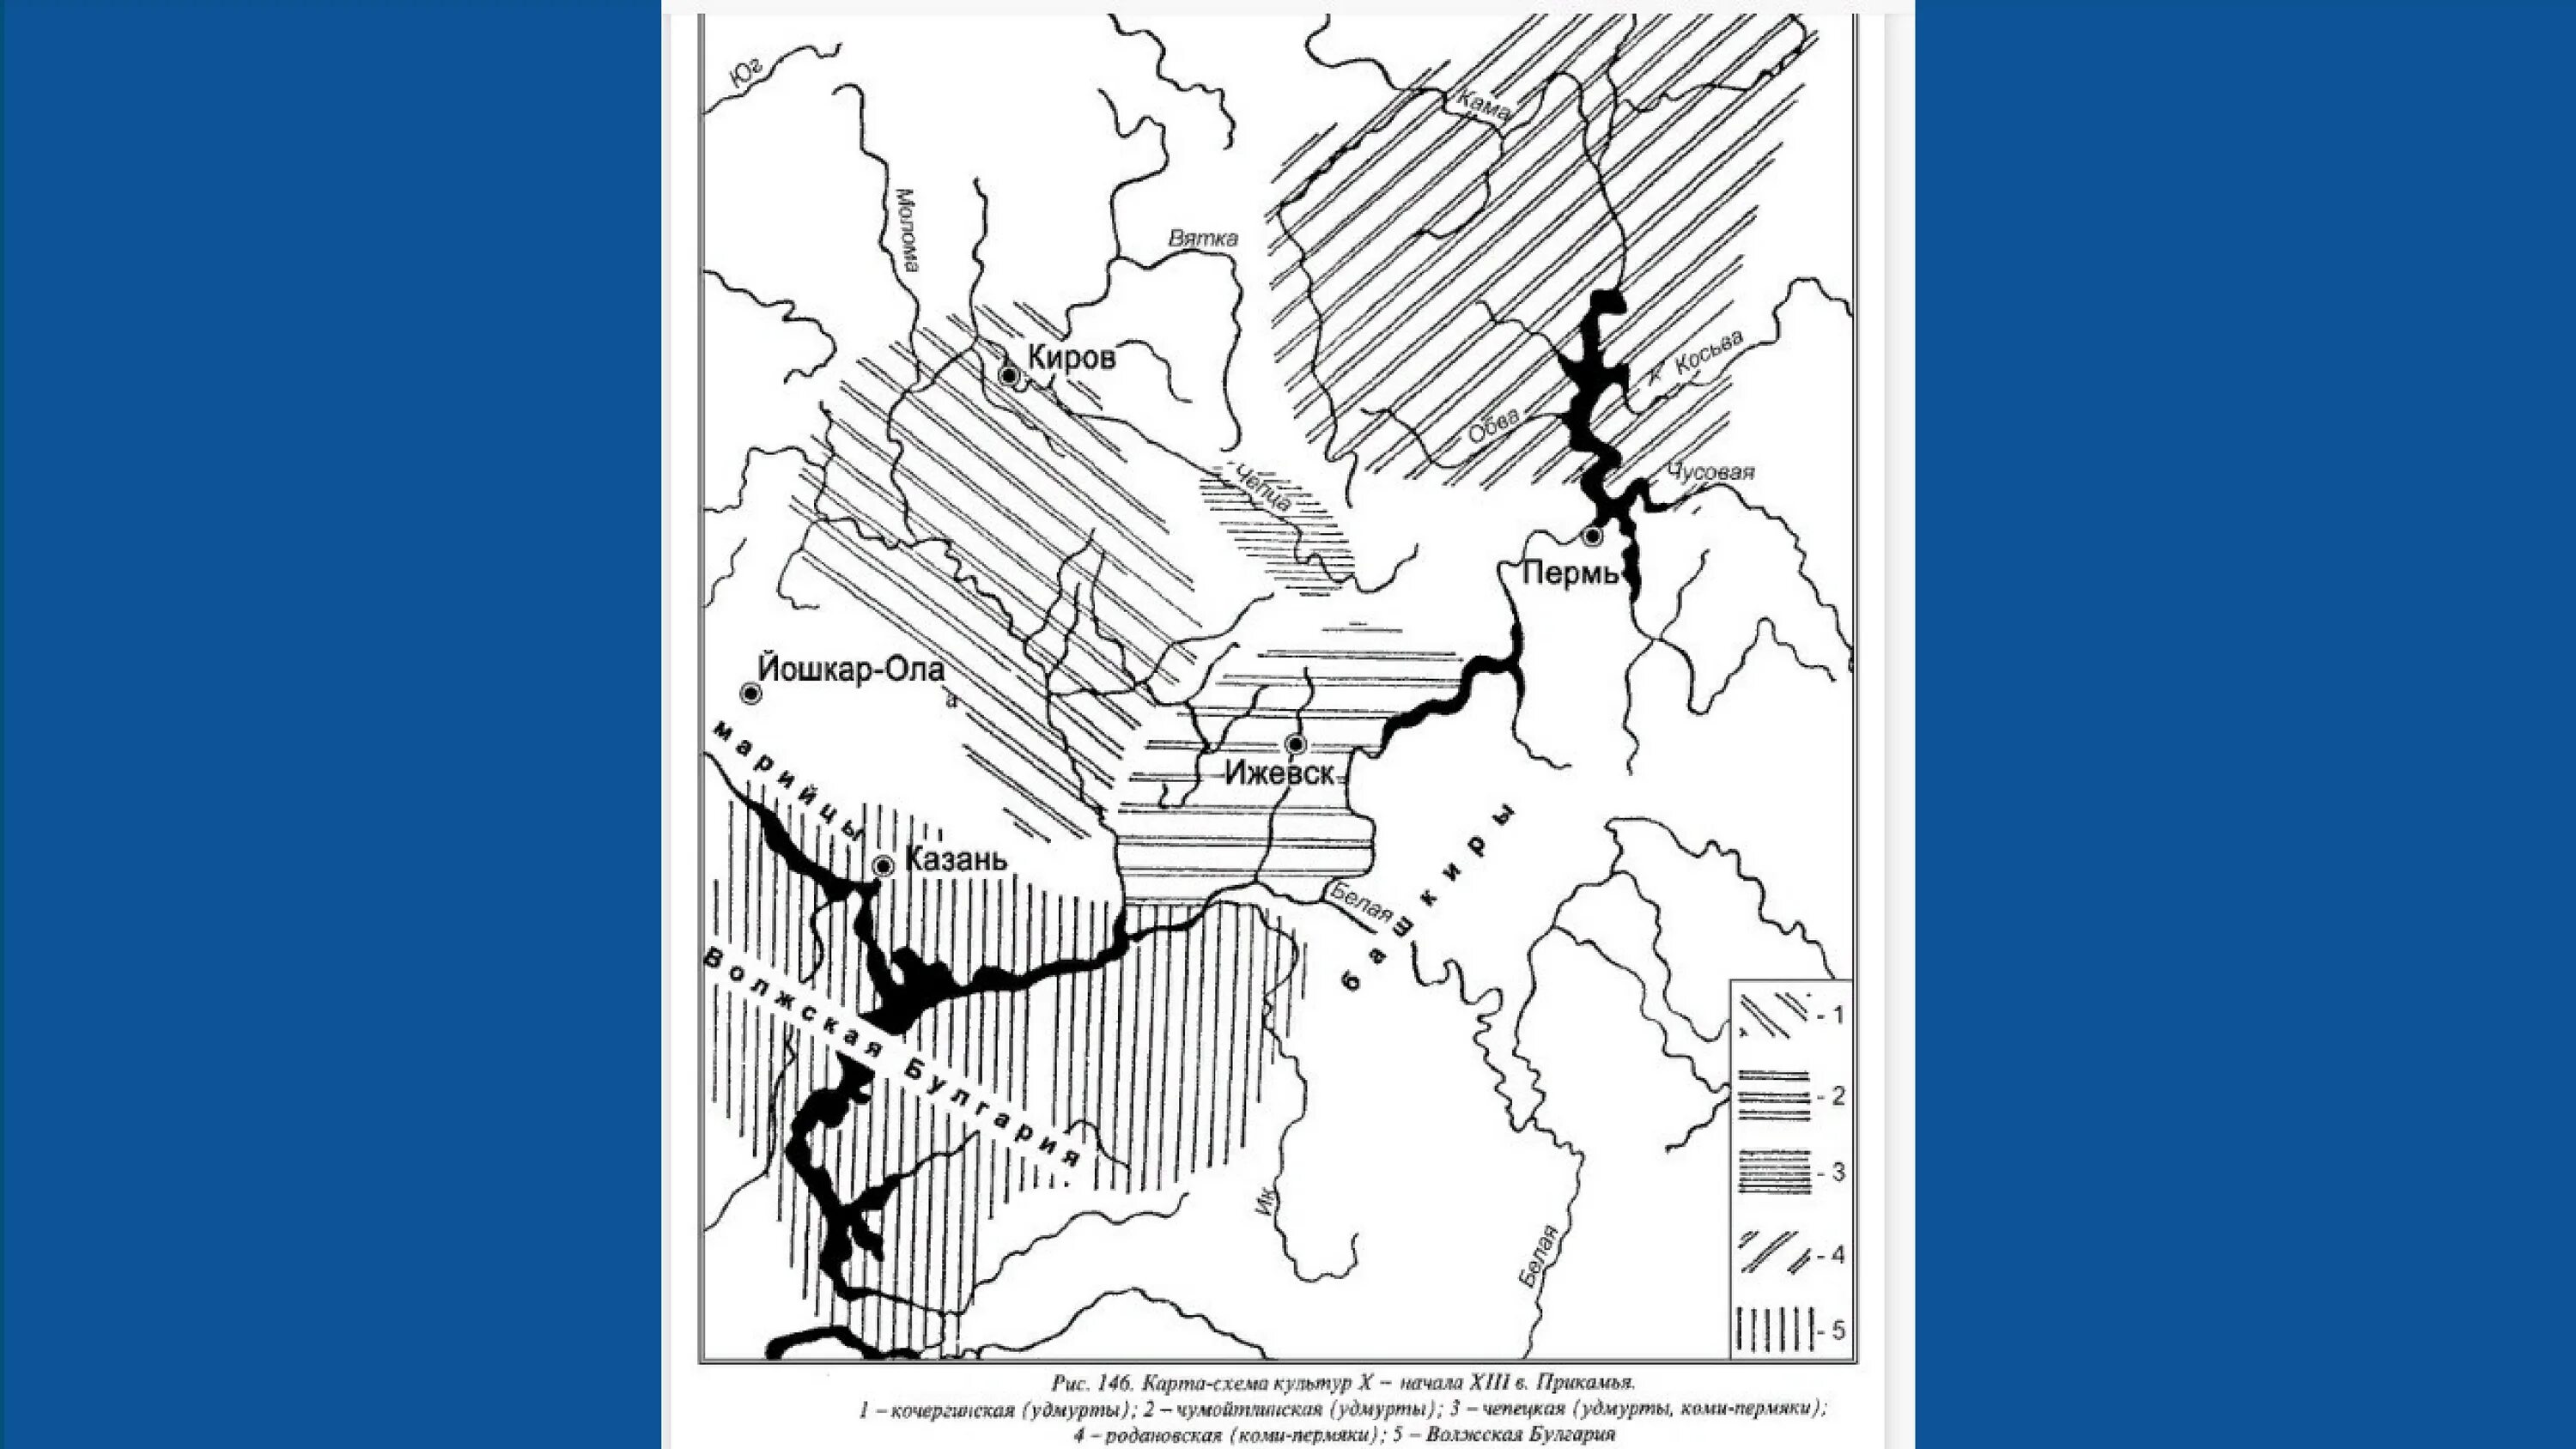 Бассейн реки Вятка. Вятка на карте. Бассейн Вятки. Вятка на карте 12 века.